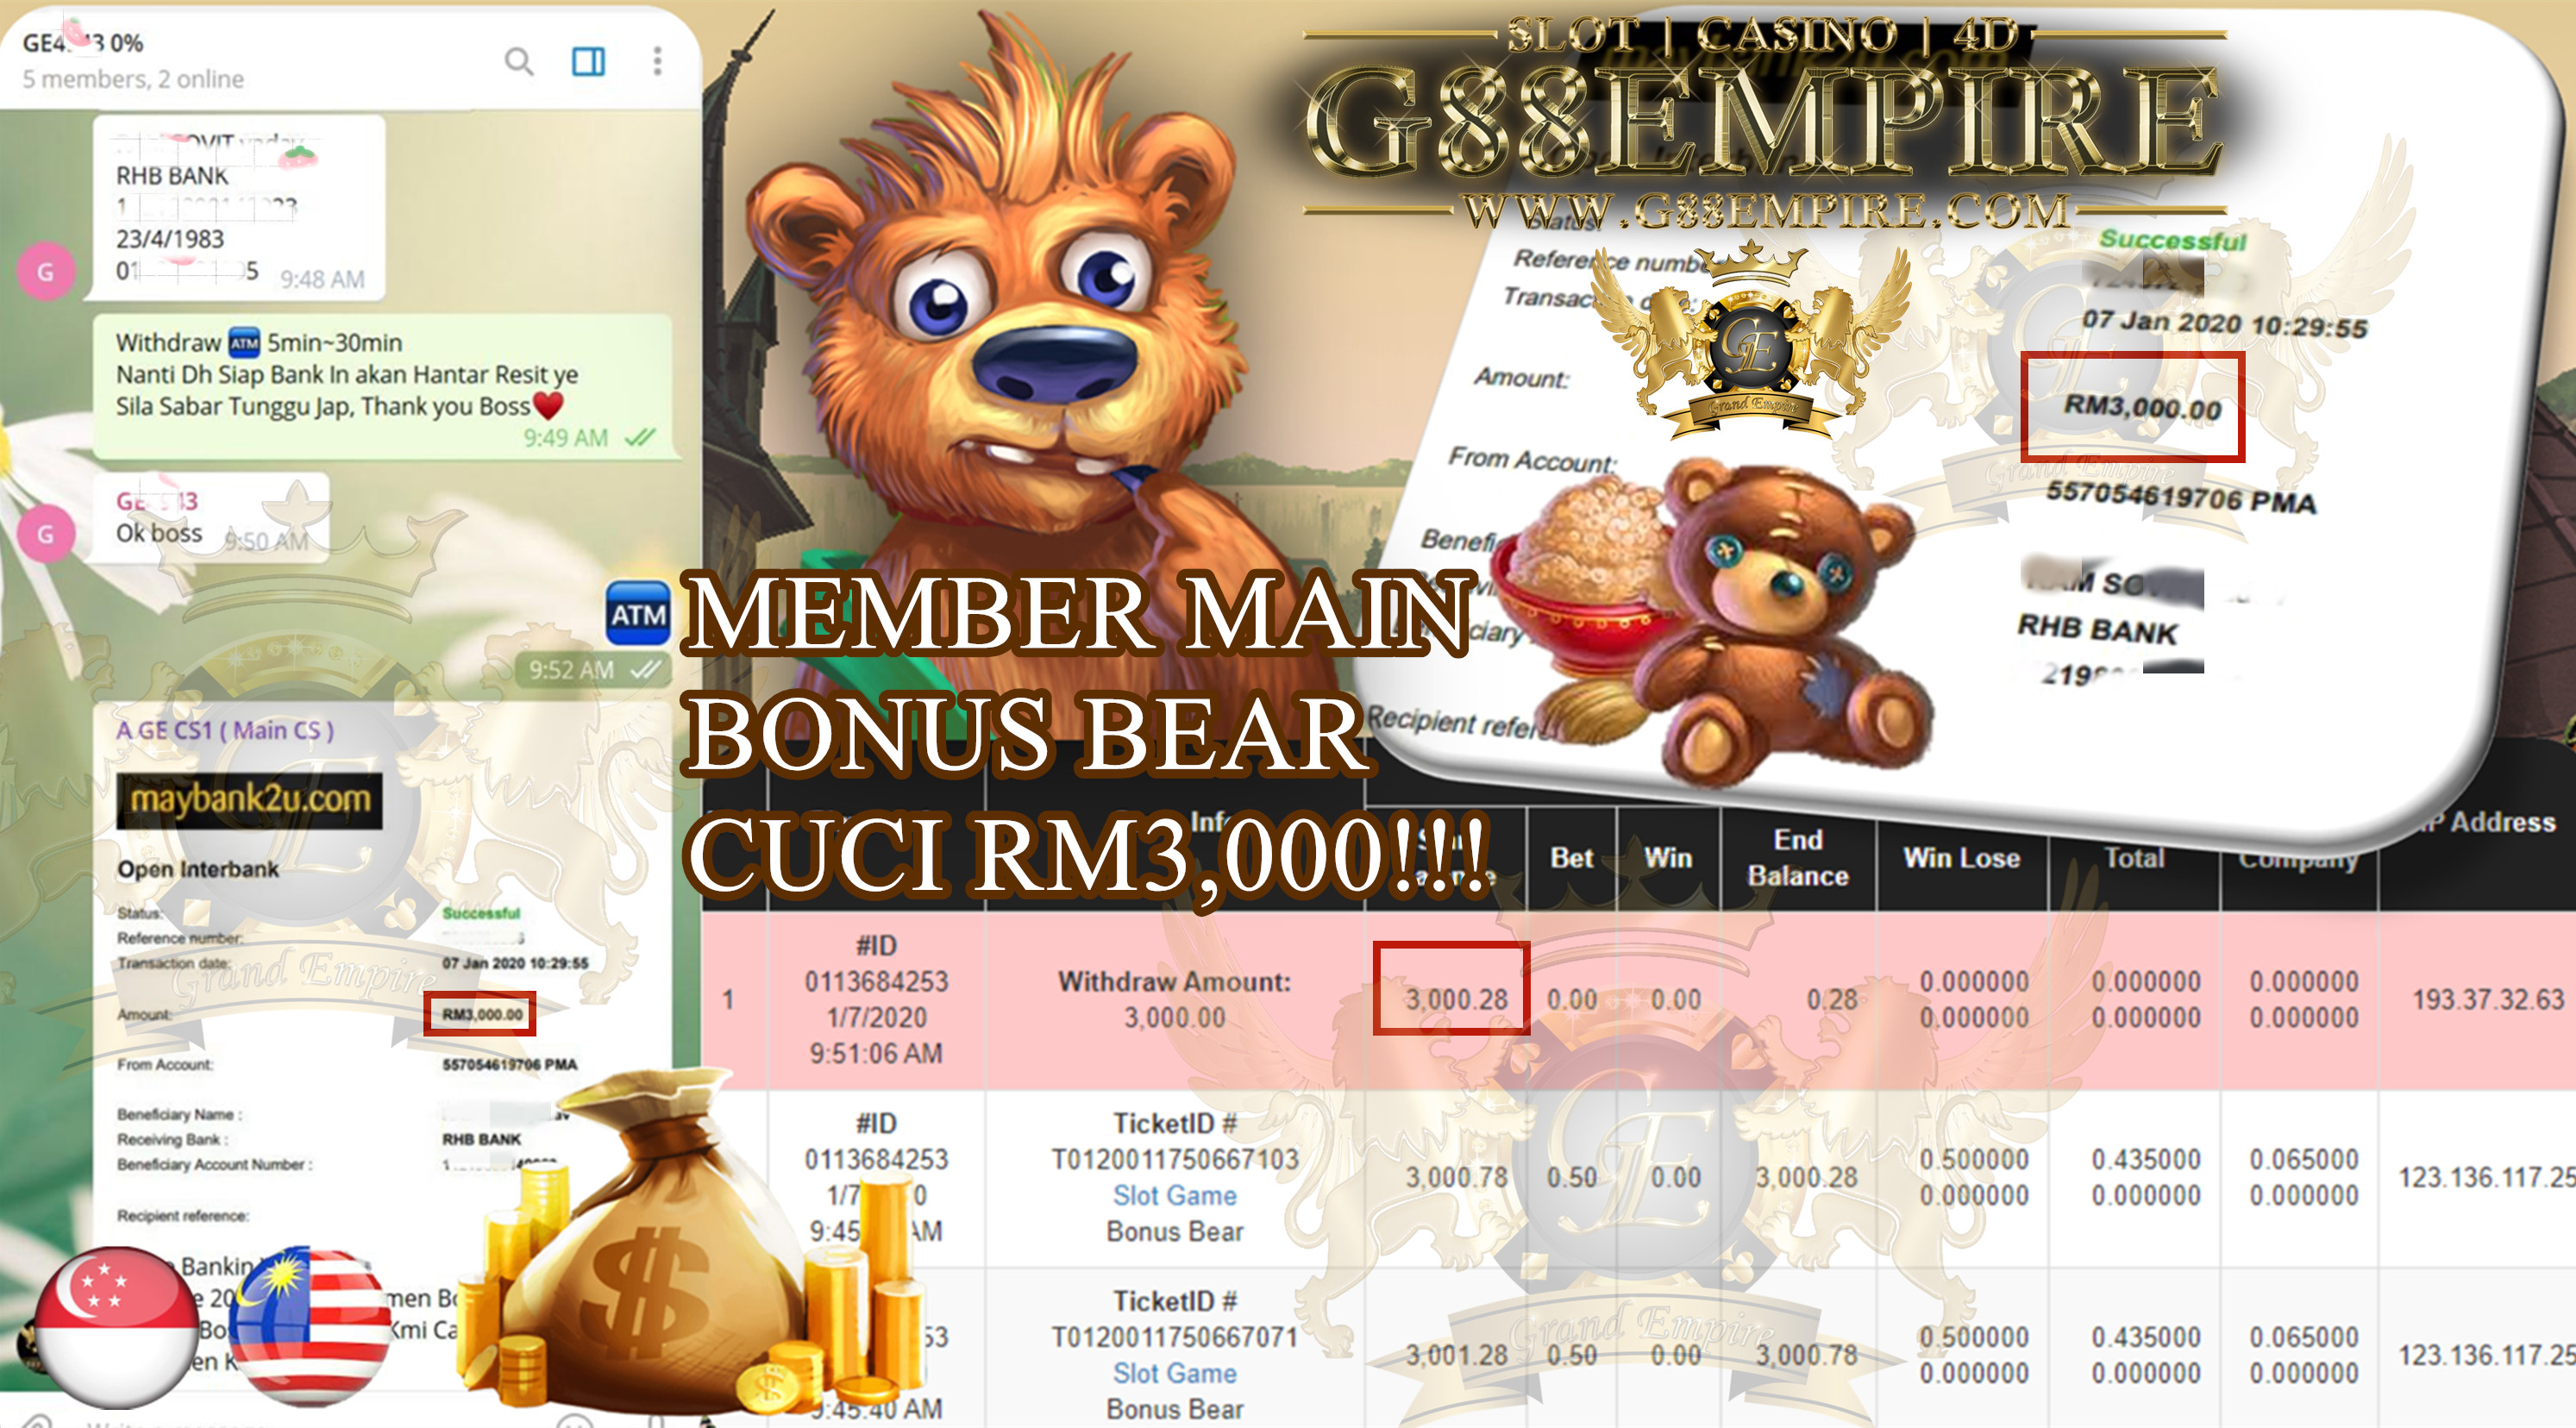 MEMBER MAIN BONUS BEAR CUCI RM3,000!!!